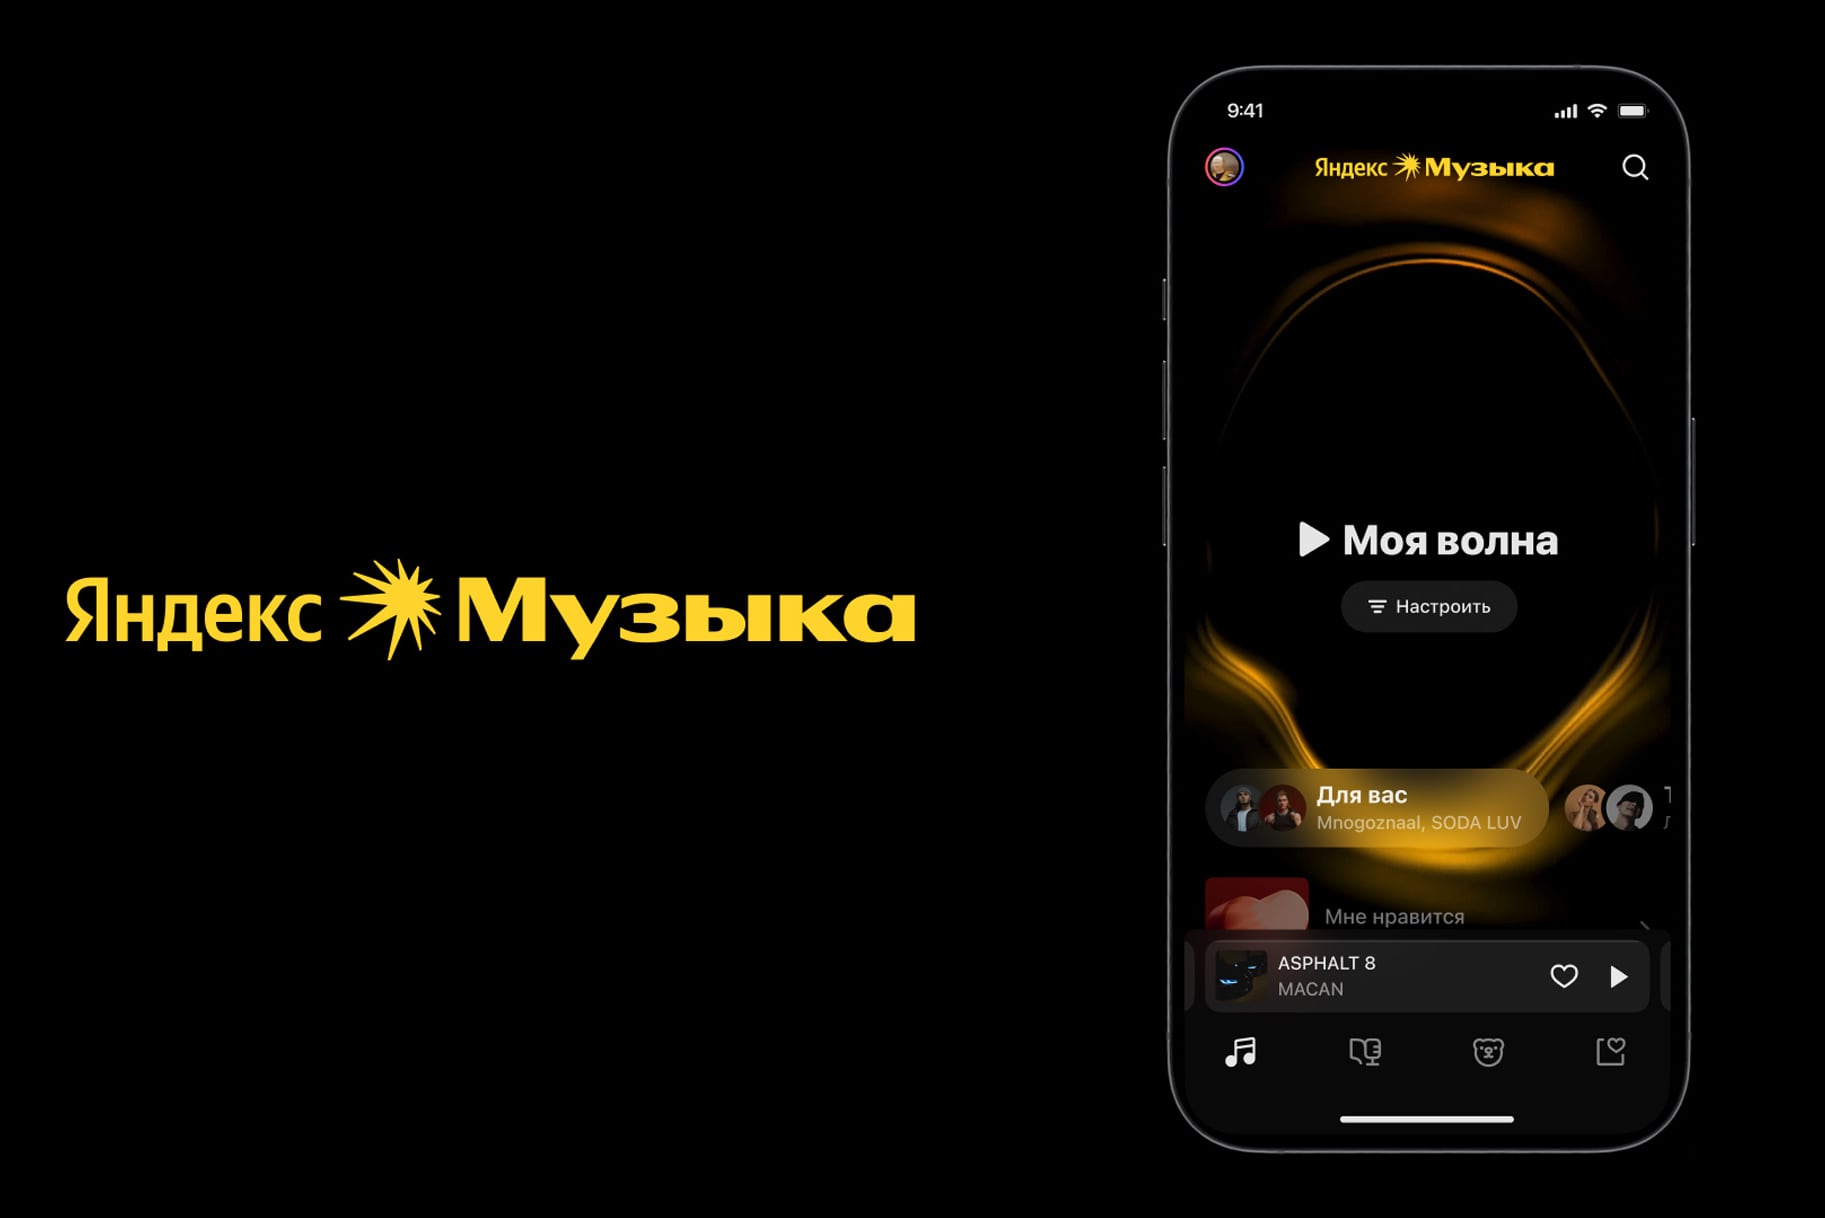 Яндекс Музыка получила новый дизайн и приложение для Mac